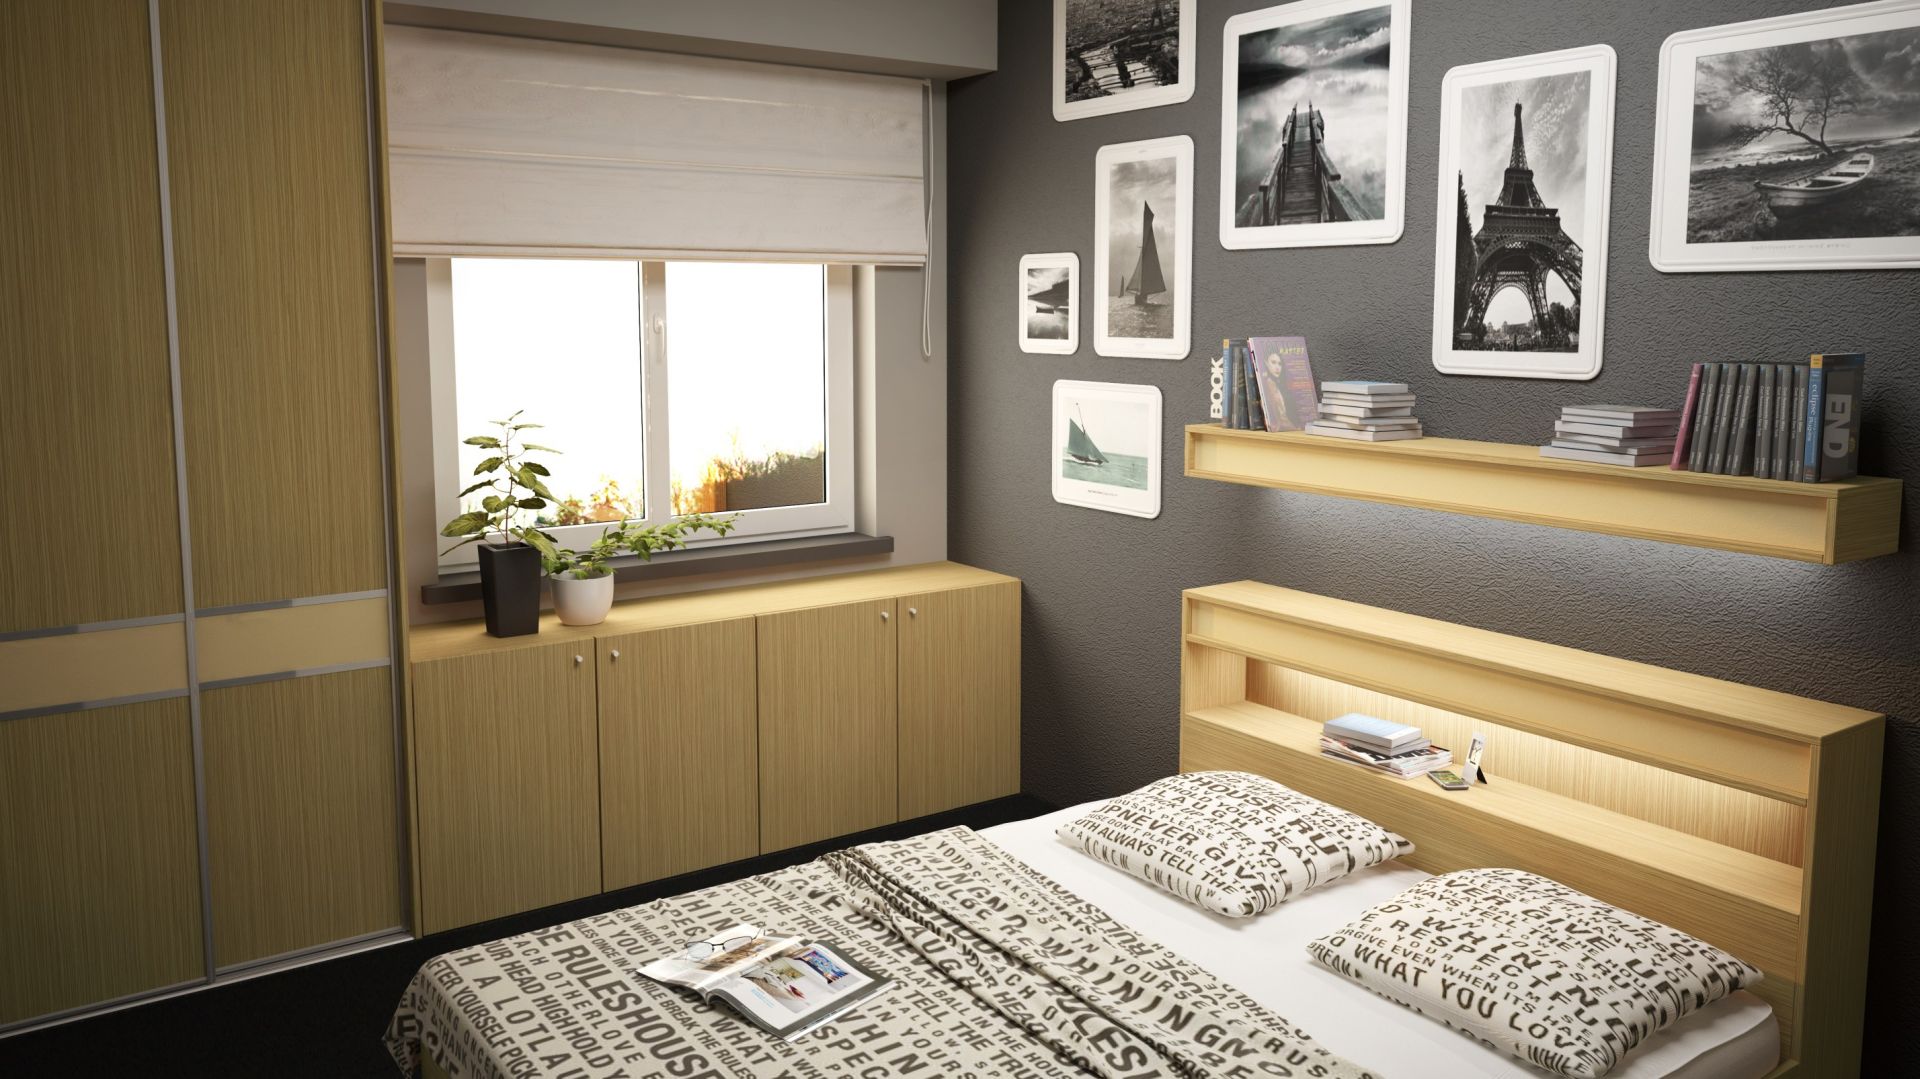 Jak dobrze wykorzystać przestrzeń w małej sypialni?